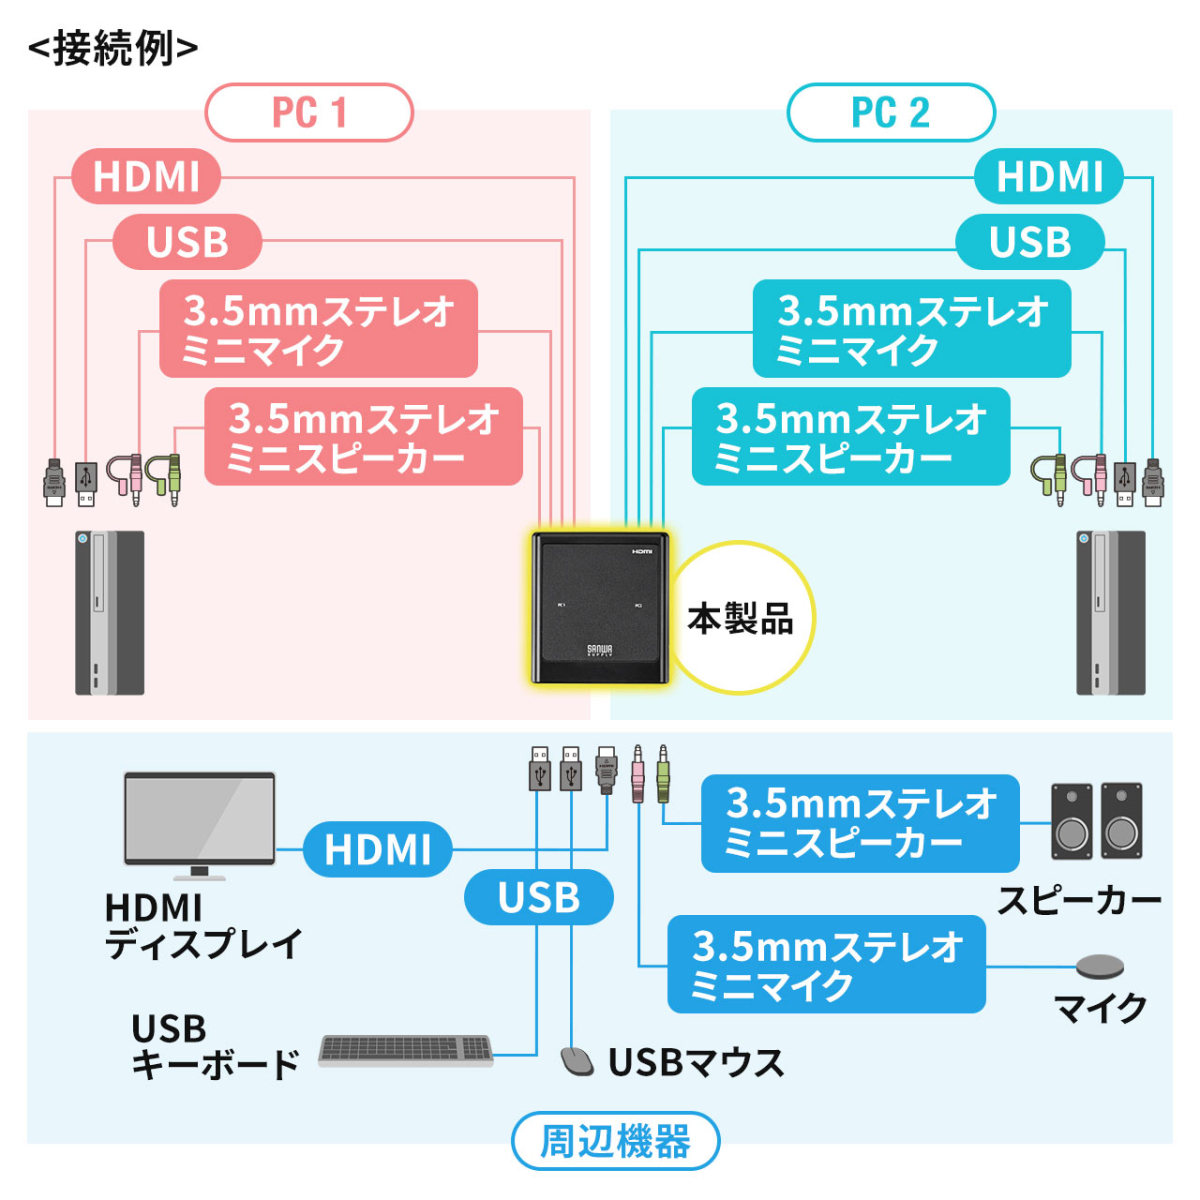 パソコン切替器 HDMI 2台 4K 60Hz KVMスイッチ USBキーボード USBマウス スピーカー マイク Windows macOS 手元スイッチ 電源不要 高解像度 対応 400-SW038